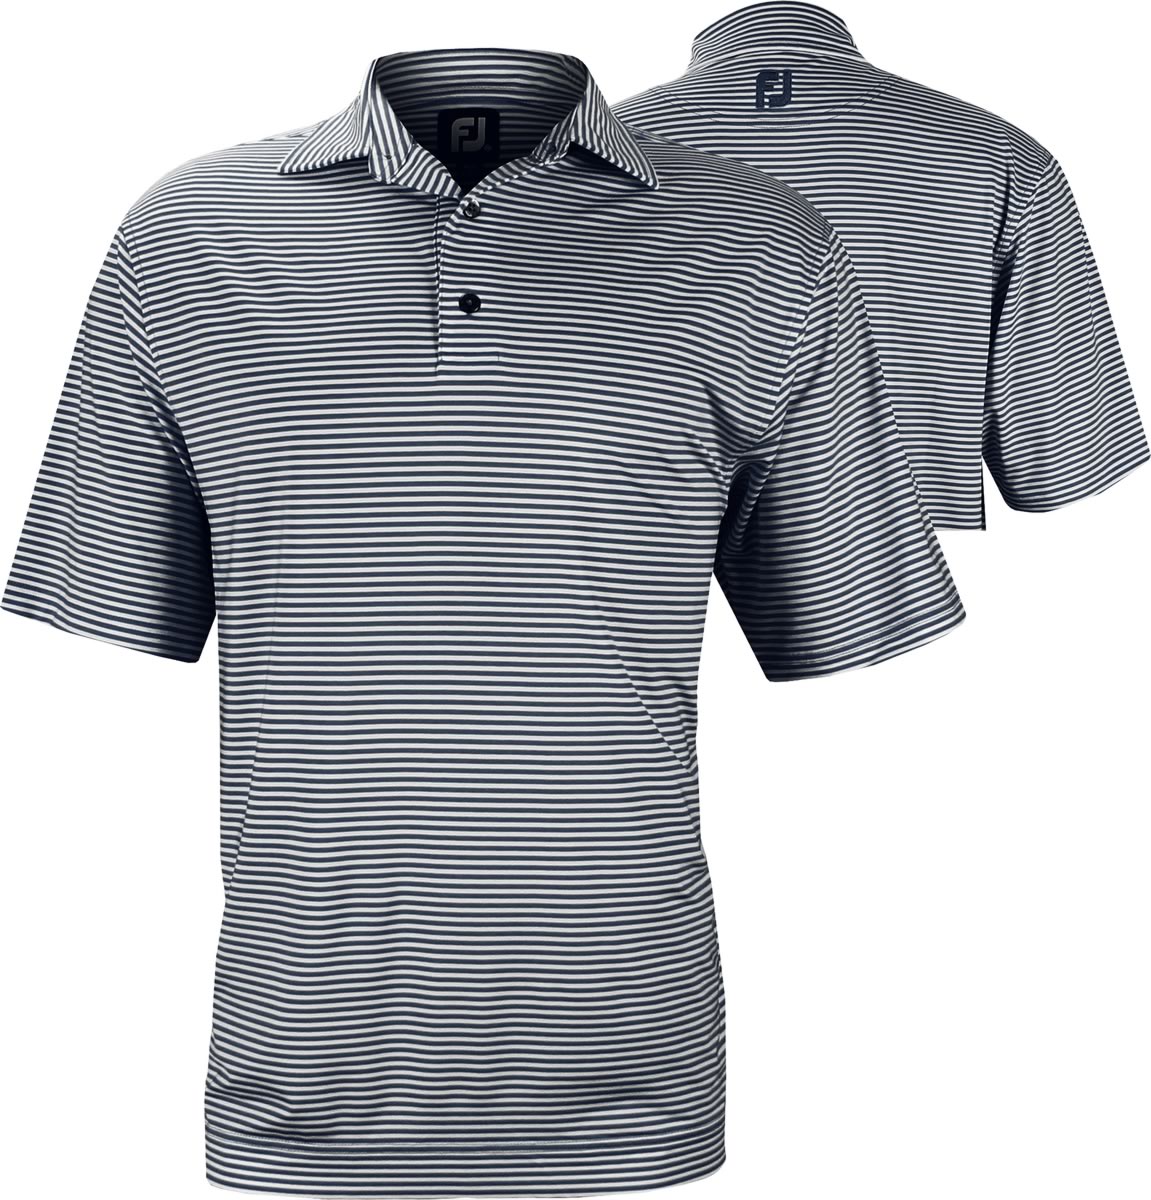 FootJoy ProDry Lisle Feeder Stripe Golf Shirts with Self Collar in ...